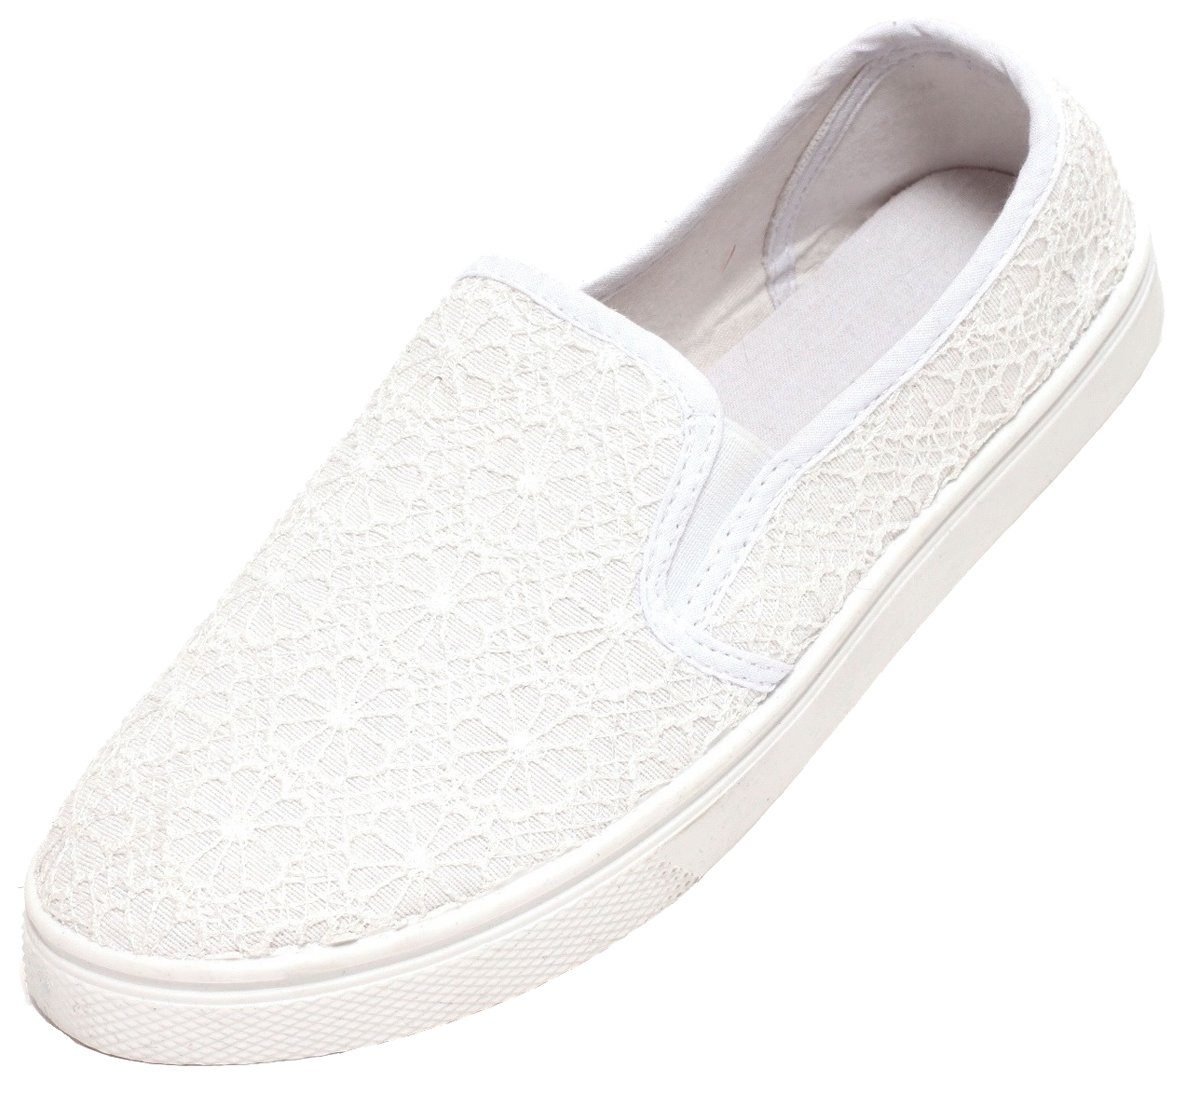 Zapato Sneaker Damen Freizeitschuhe weiß Spitze Slipper Schuhe Sommerschuhe  Mokassin online kaufen | OTTO